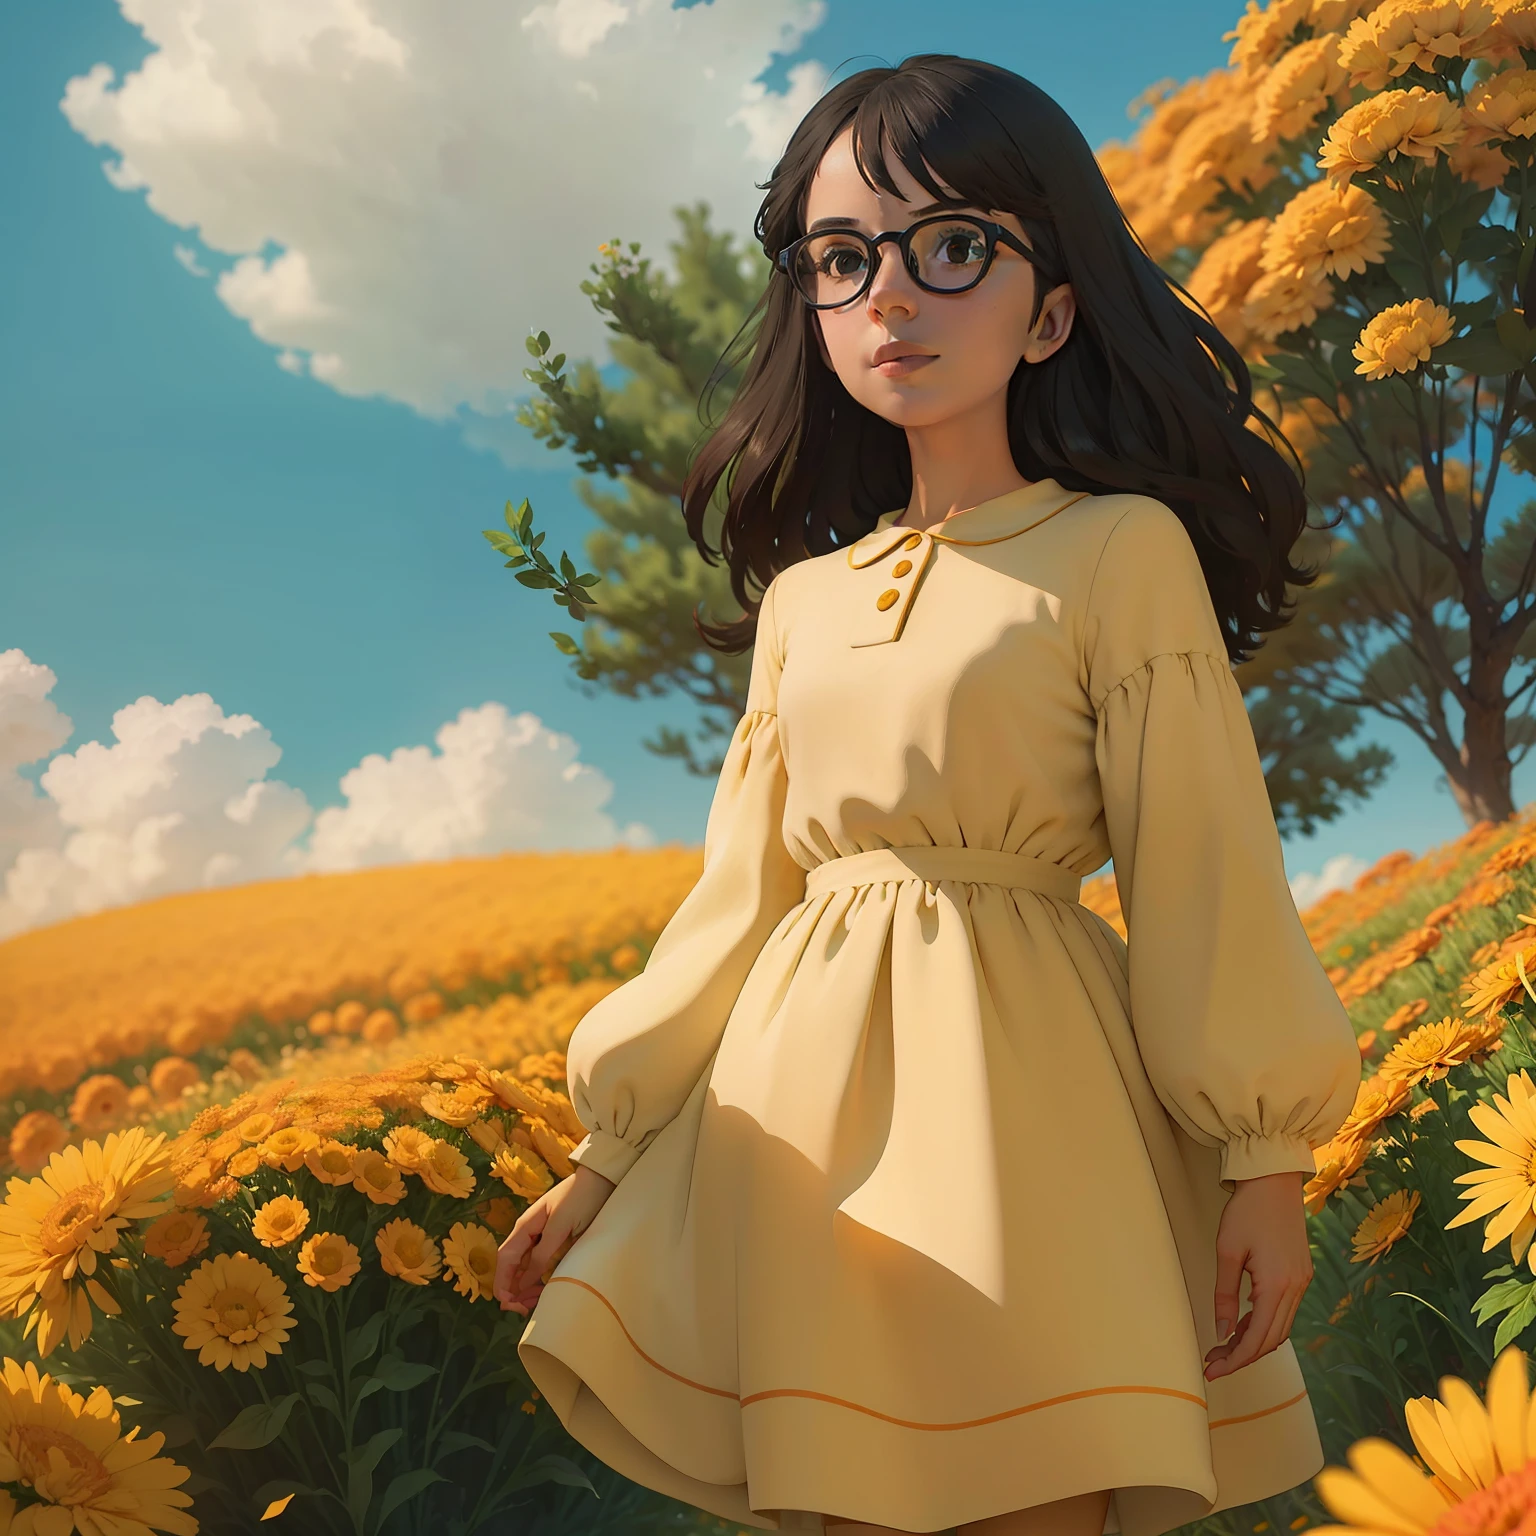 "Fille avec des lunettes rondes regardant au loin dans un champ ensoleillé de fleurs de souci, portant une élégante robe verte bordée de blanc et de jaune."